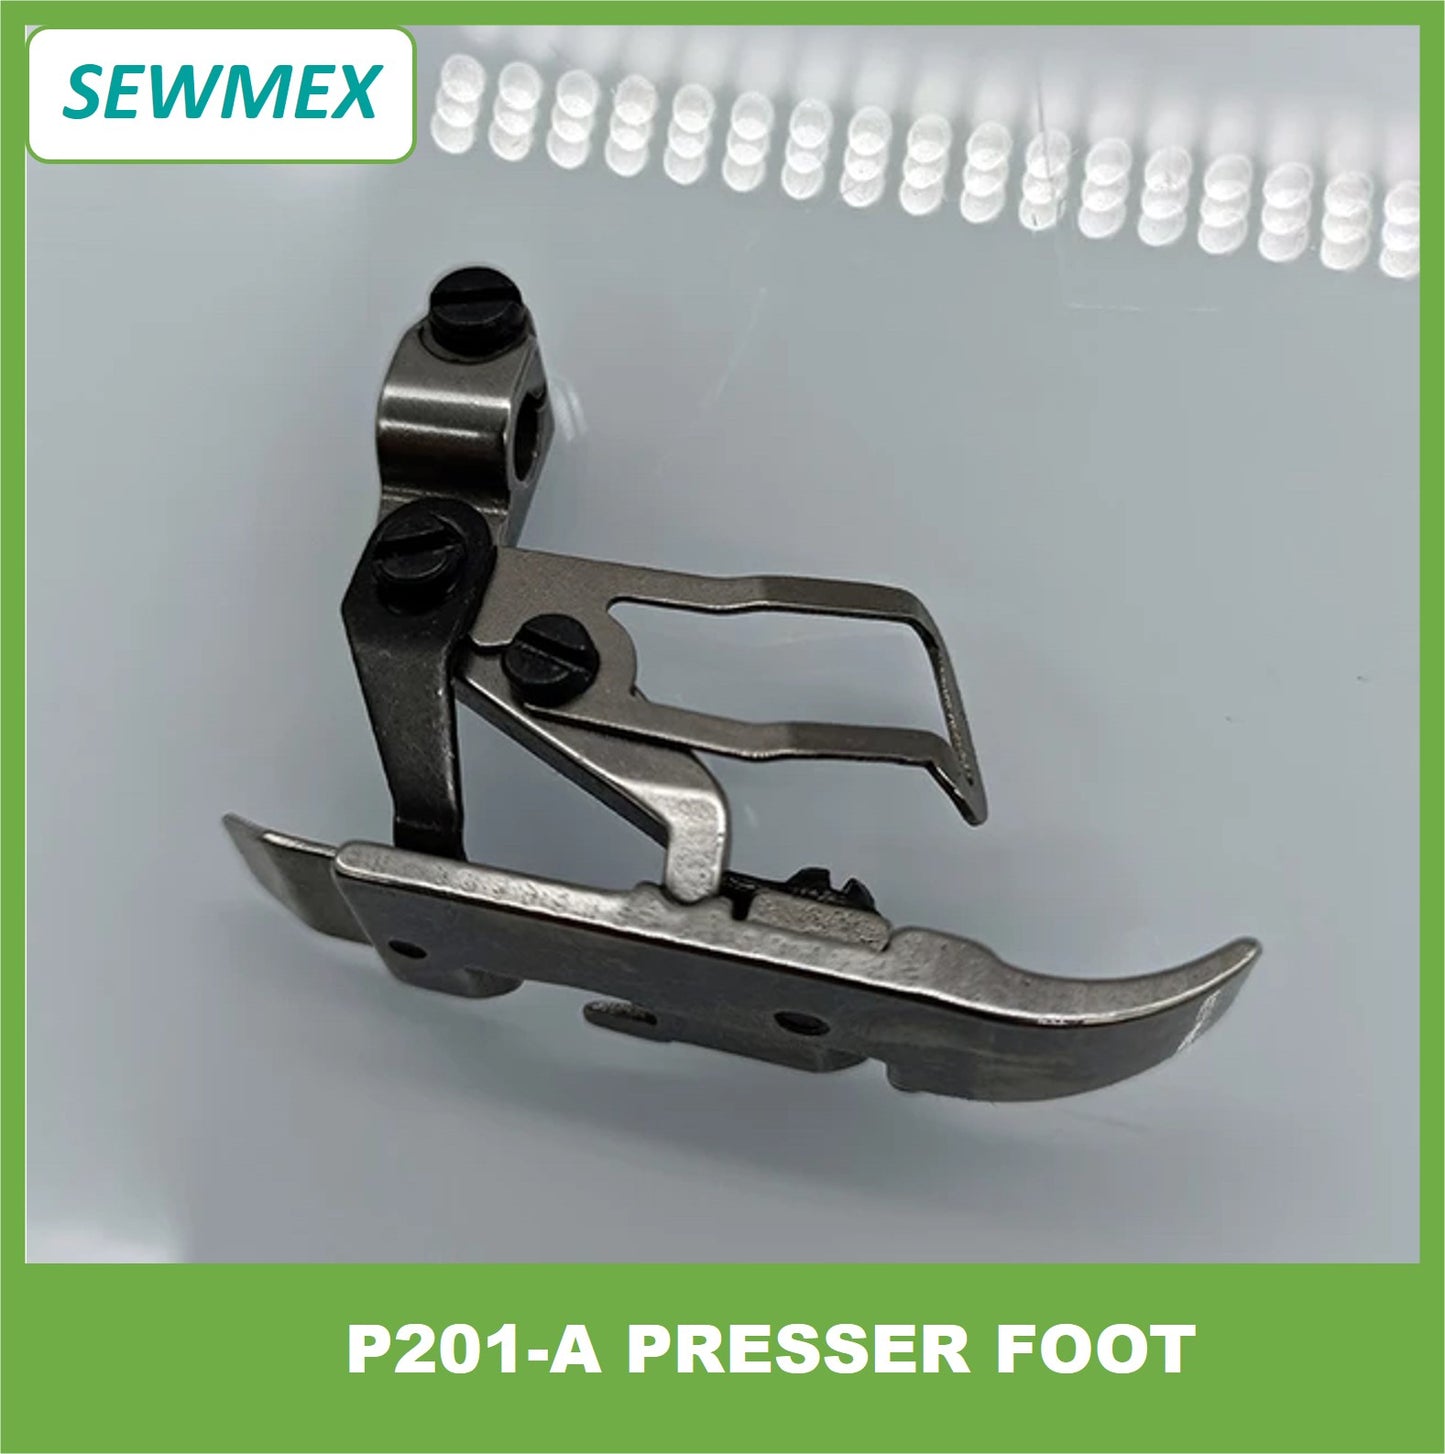 P201-A Presser Foot